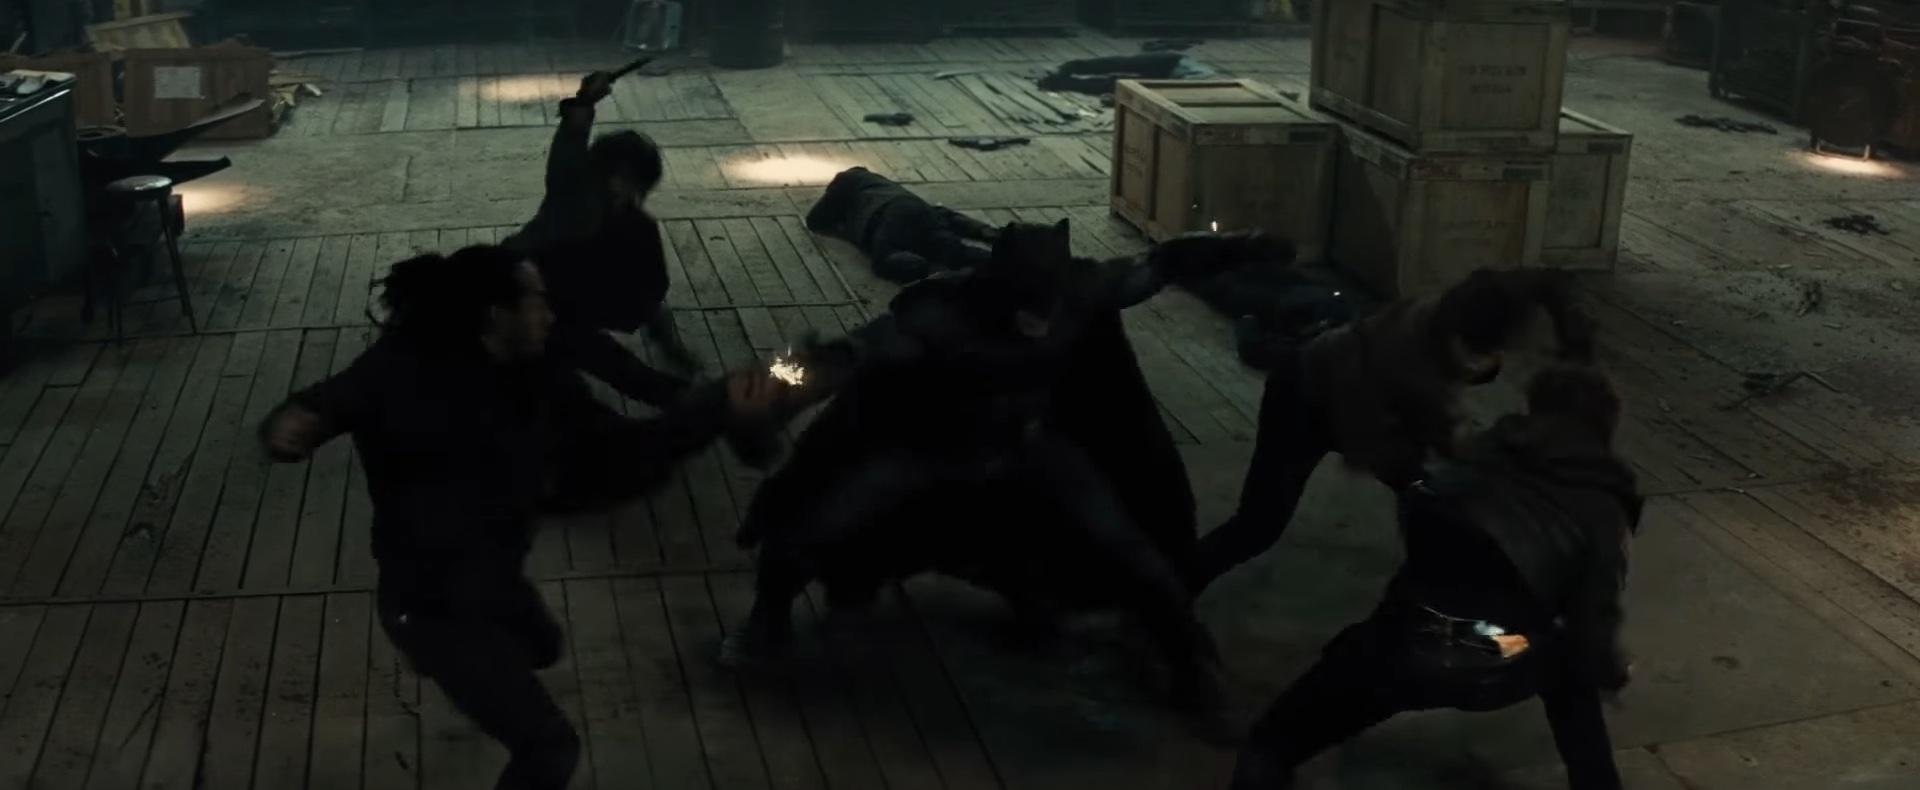 Batman lutando contra criminosos em um armazém em "Batman v Superman: Dawn of Justice".